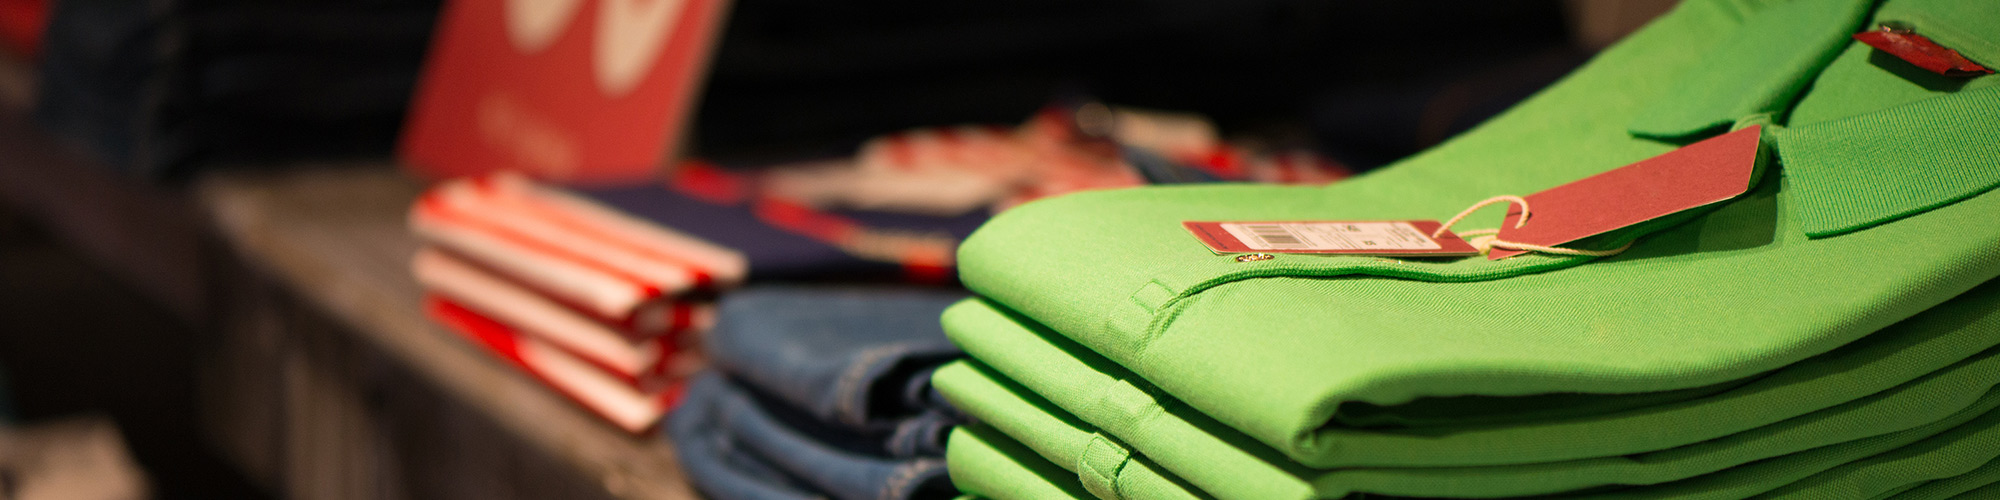 Colorful golf shirts folded and kept on shelf